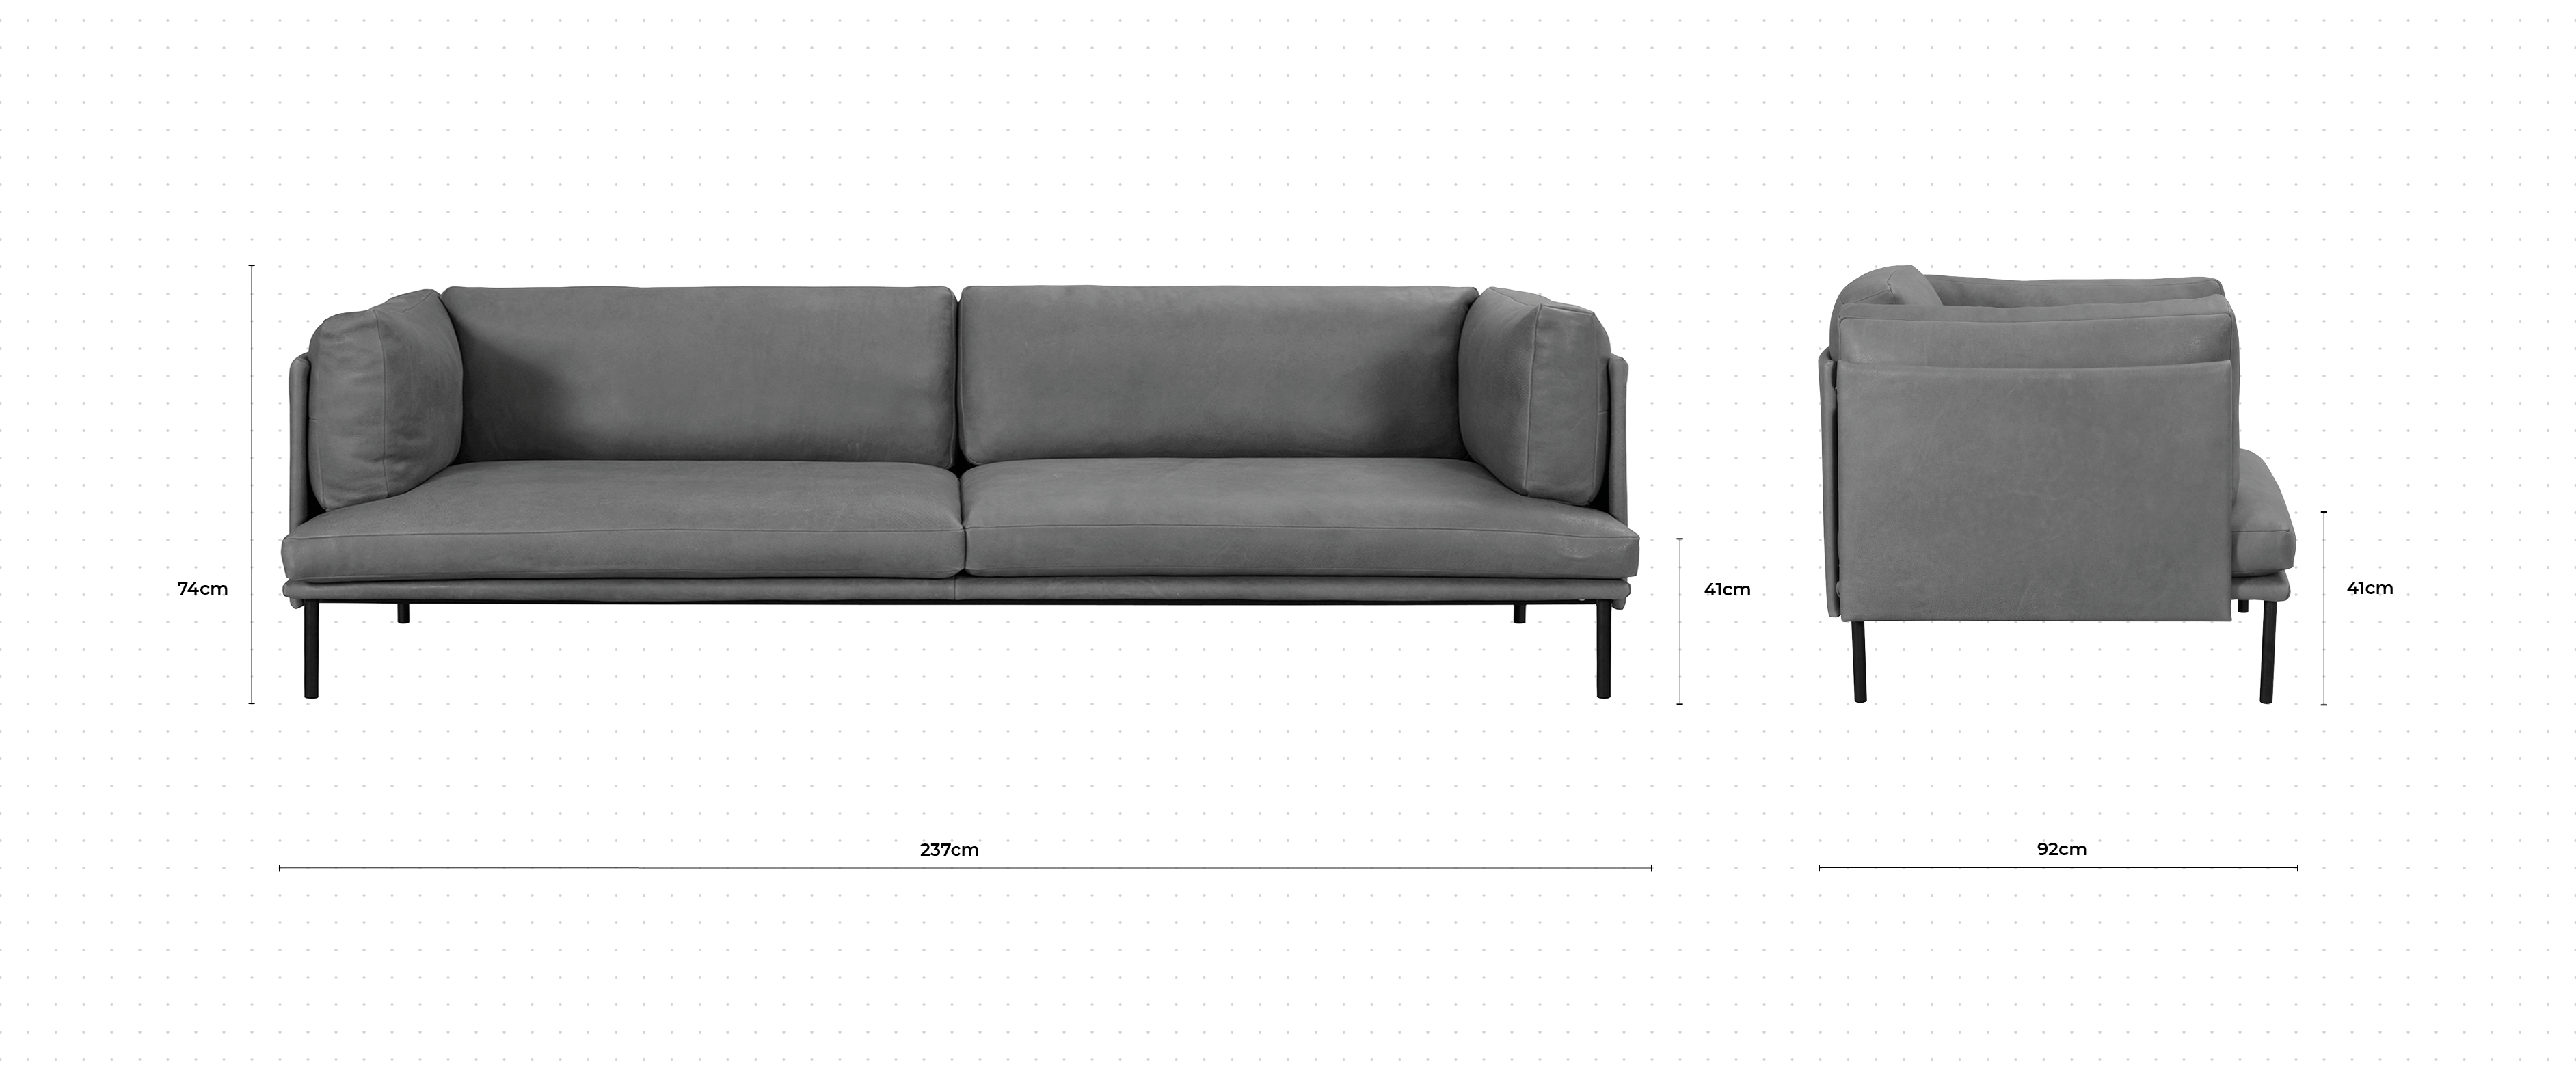 Brioche 3 Seater Sofa dimensions